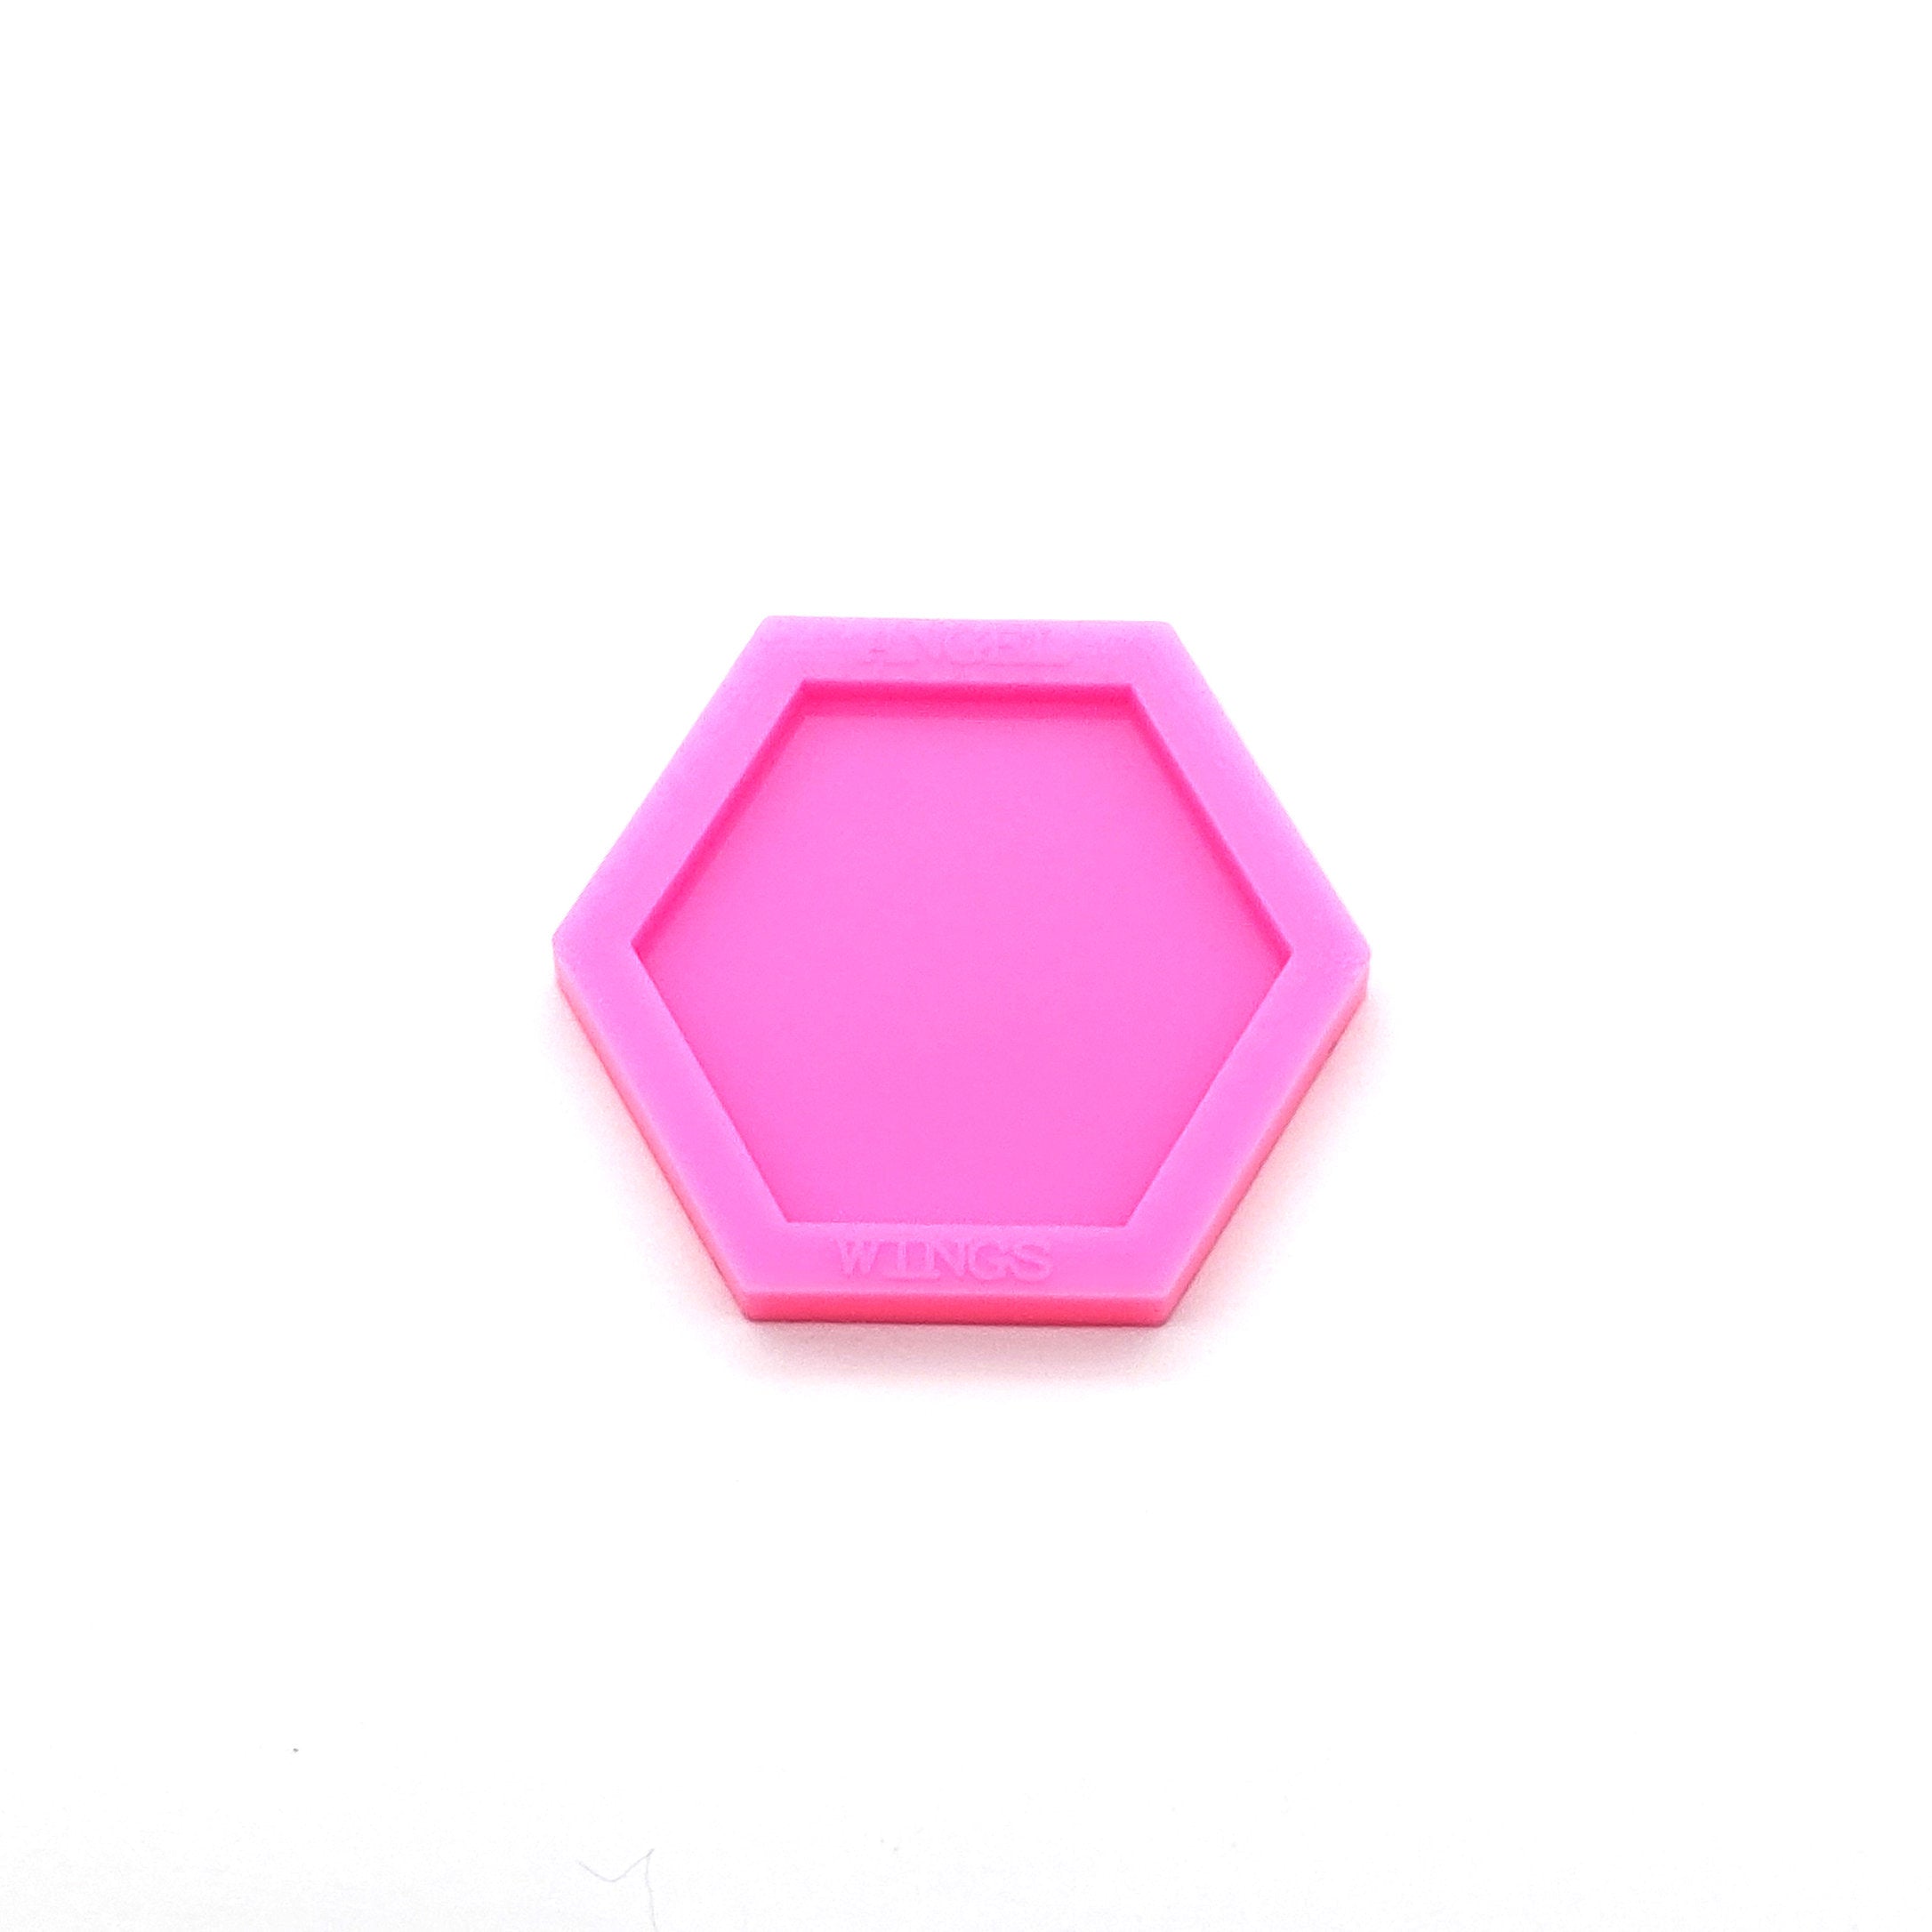 Hexagon Pop-Socket Shiny Silicone Mold